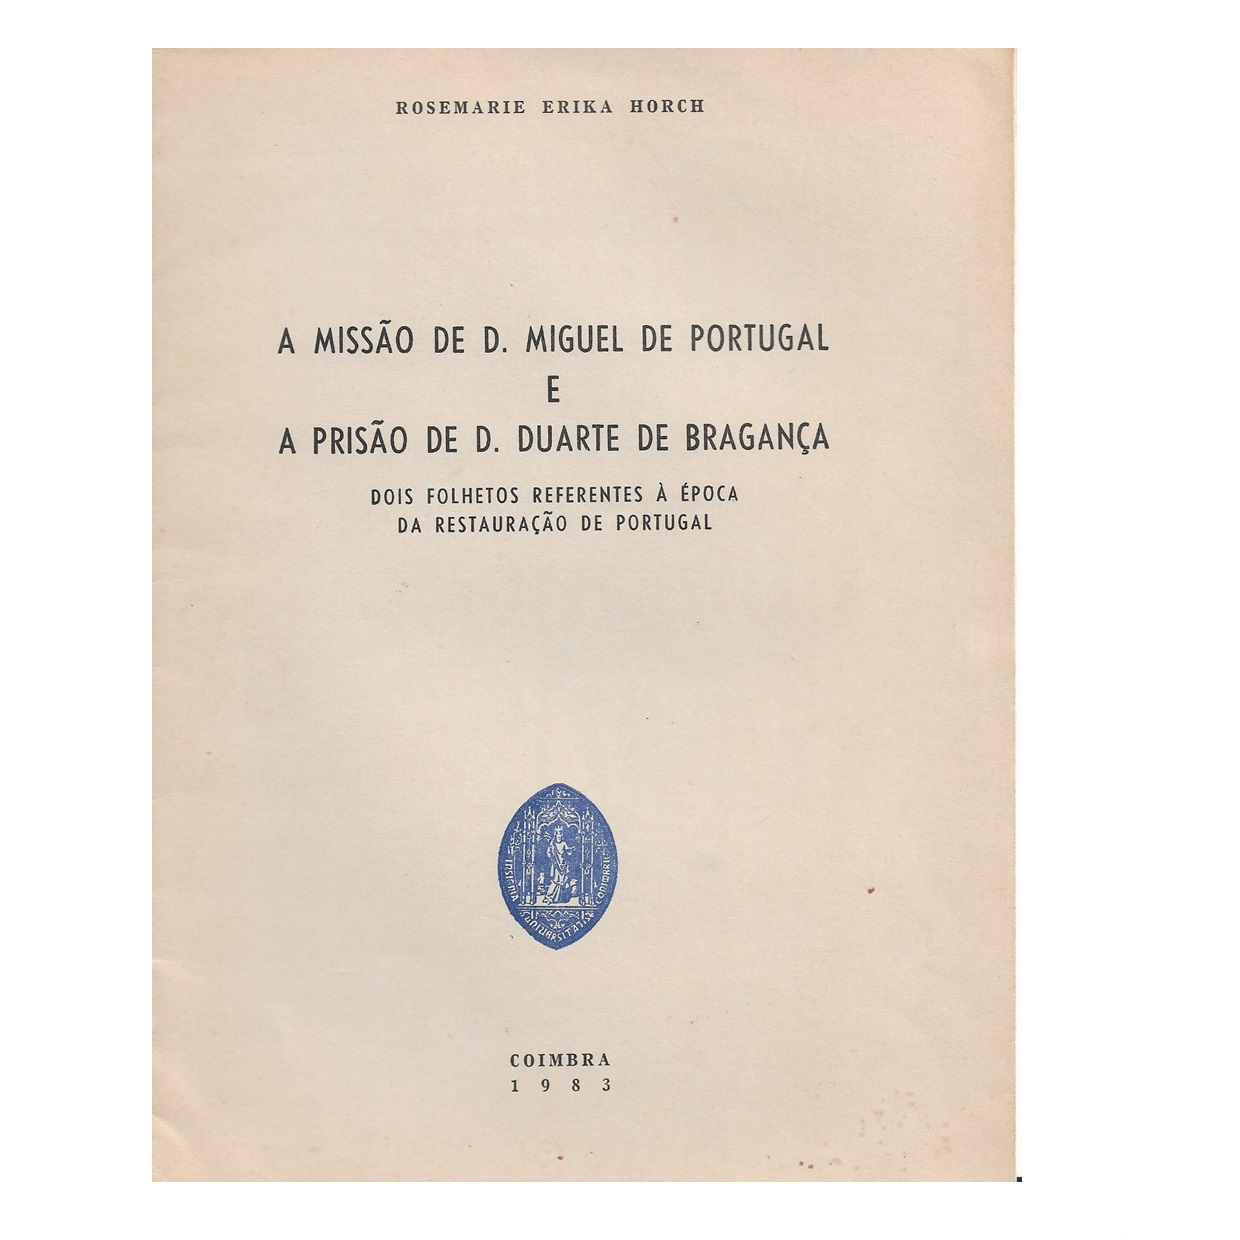 A missão de D. Miguel de Portugal e a prisão de D. Duarte de Bragança. Dois folhetos referentes à época da restauração de Portugal. 